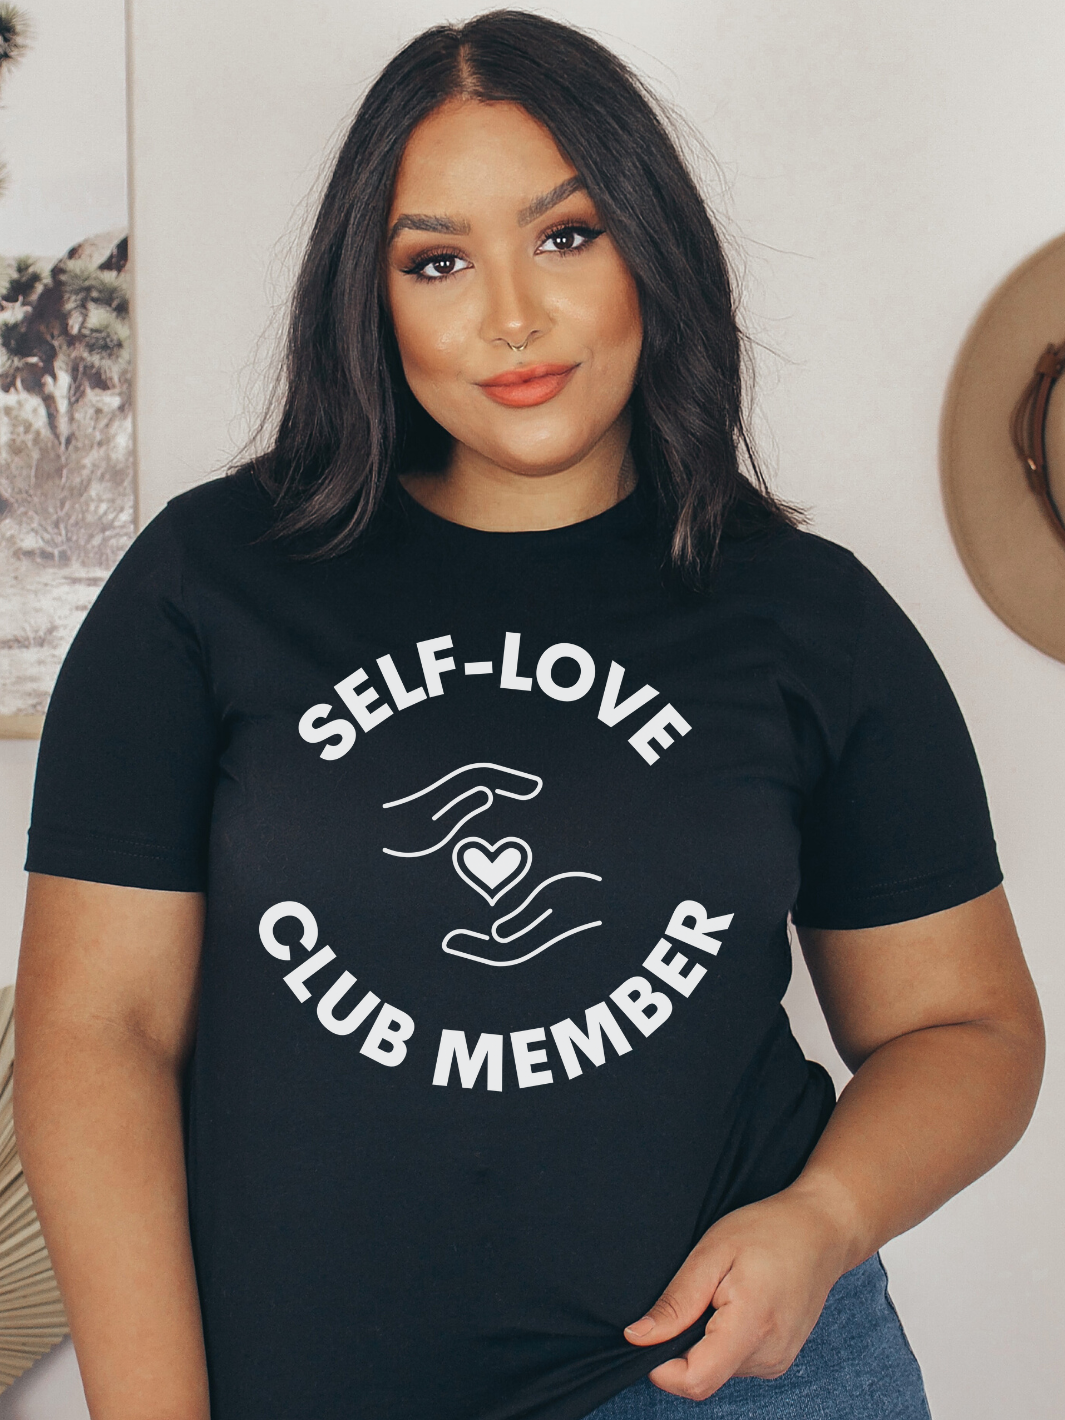 SELF-LOVE CLUB MEMBER T-Shirt